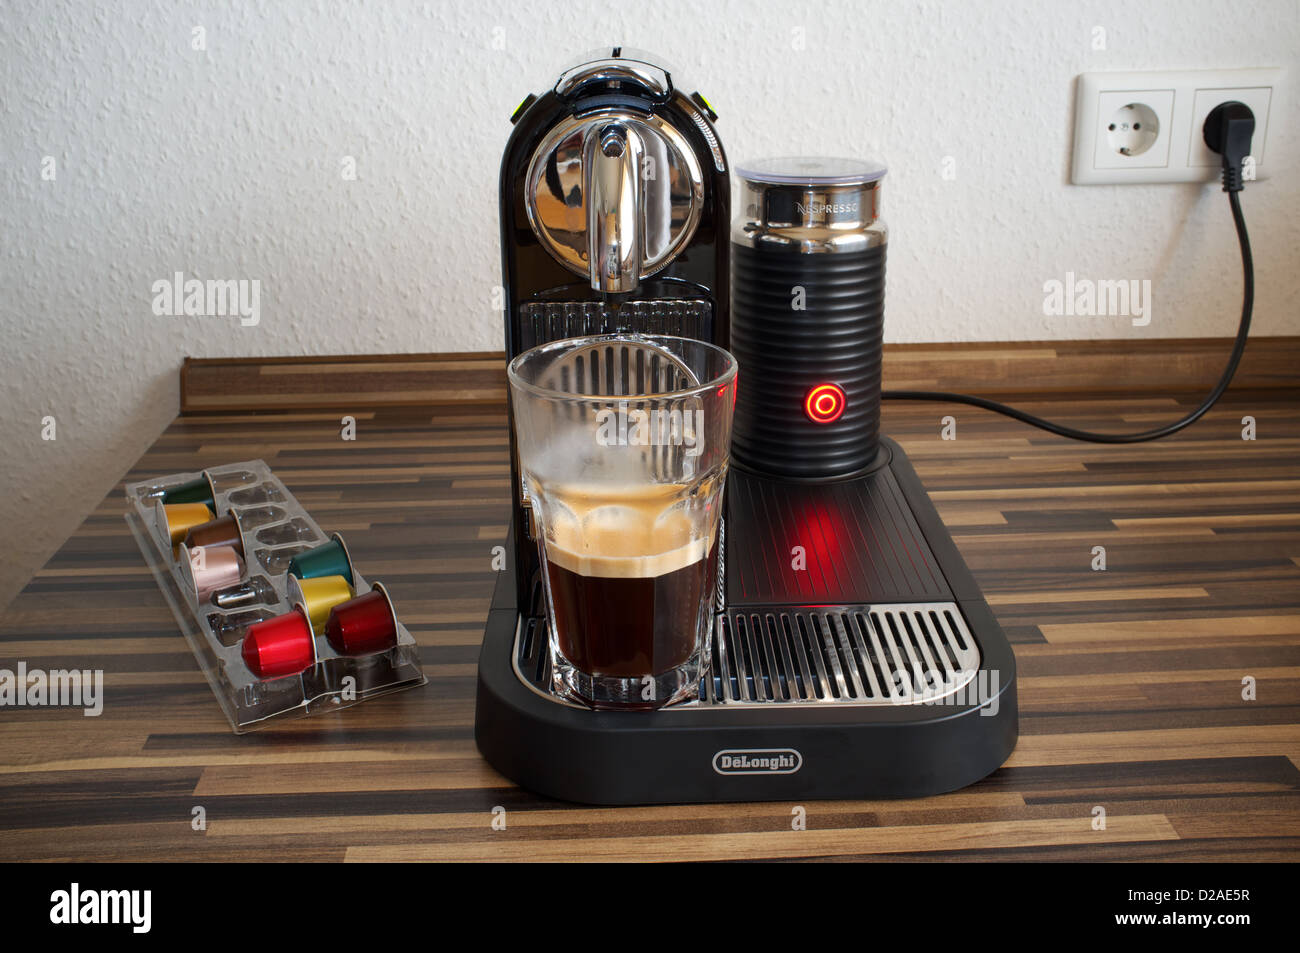 https://c8.alamy.com/comp/D2AE5R/nespresso-delonghi-coffee-machine-D2AE5R.jpg